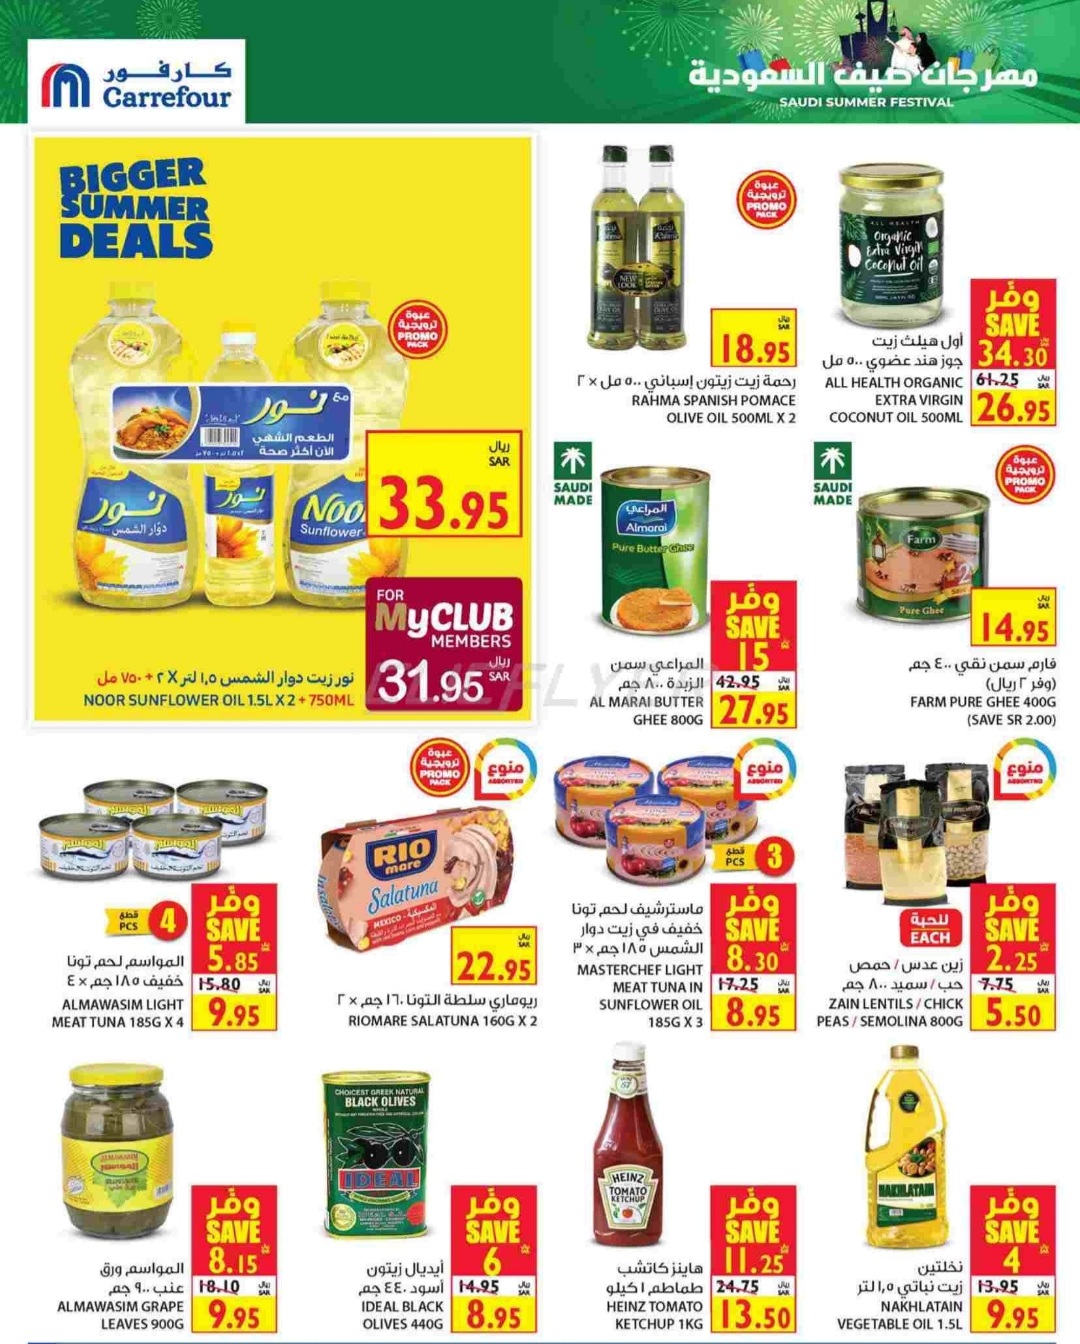 أسعار المنتجات الغذائية والمعلبات في أغسطس من كارفور